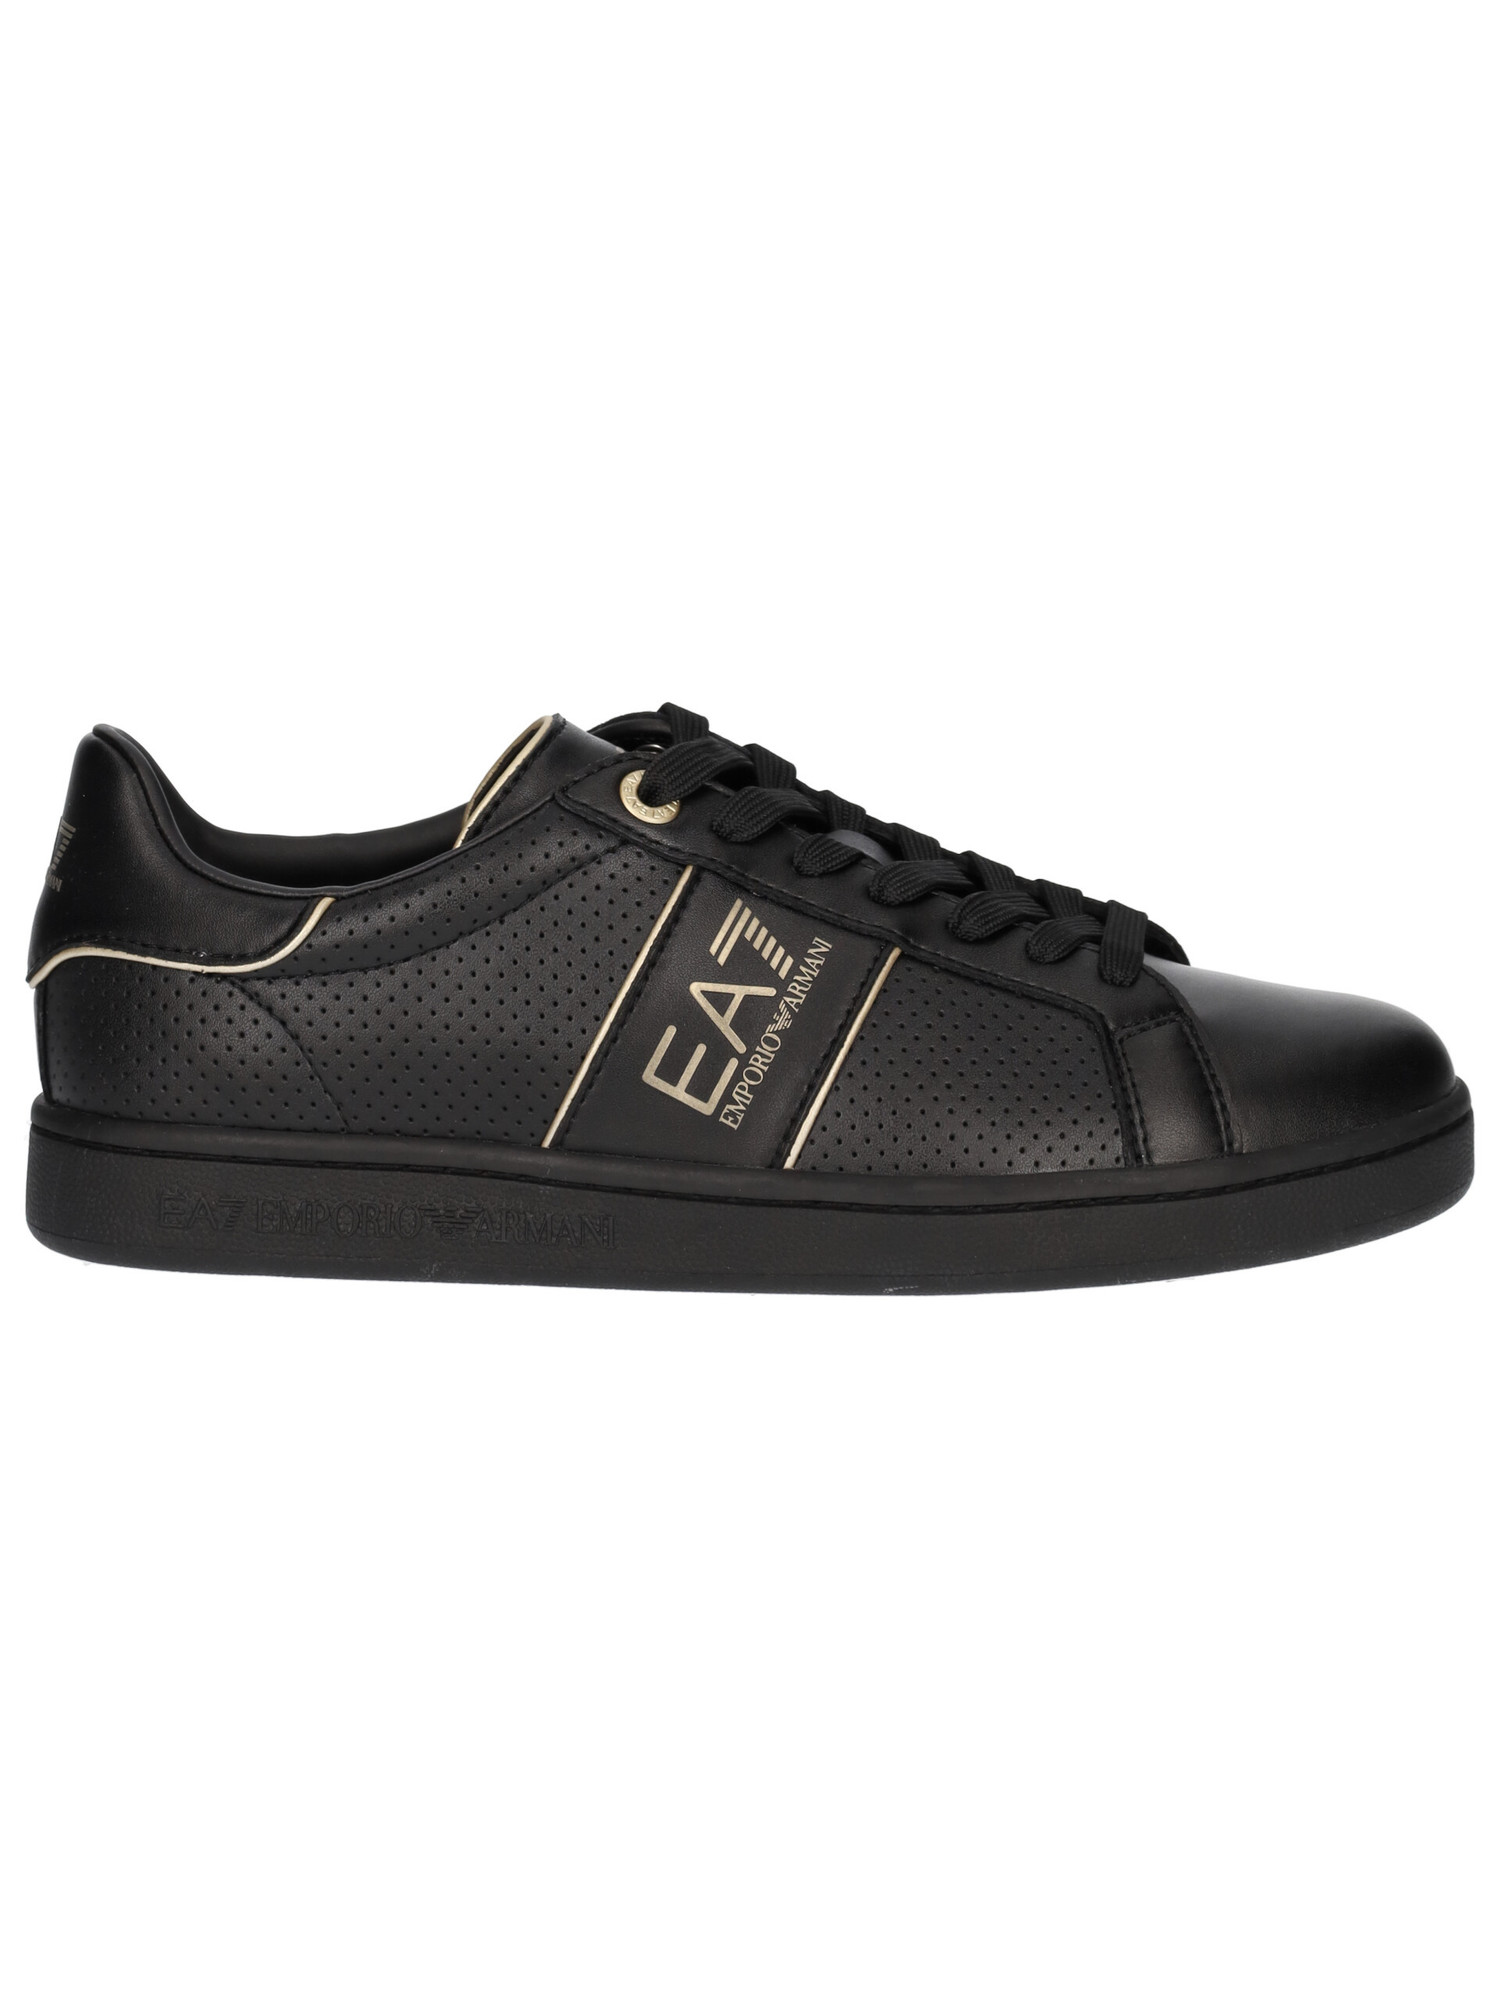 sneaker-emporio-armani-da-uomo-nera-d8712f